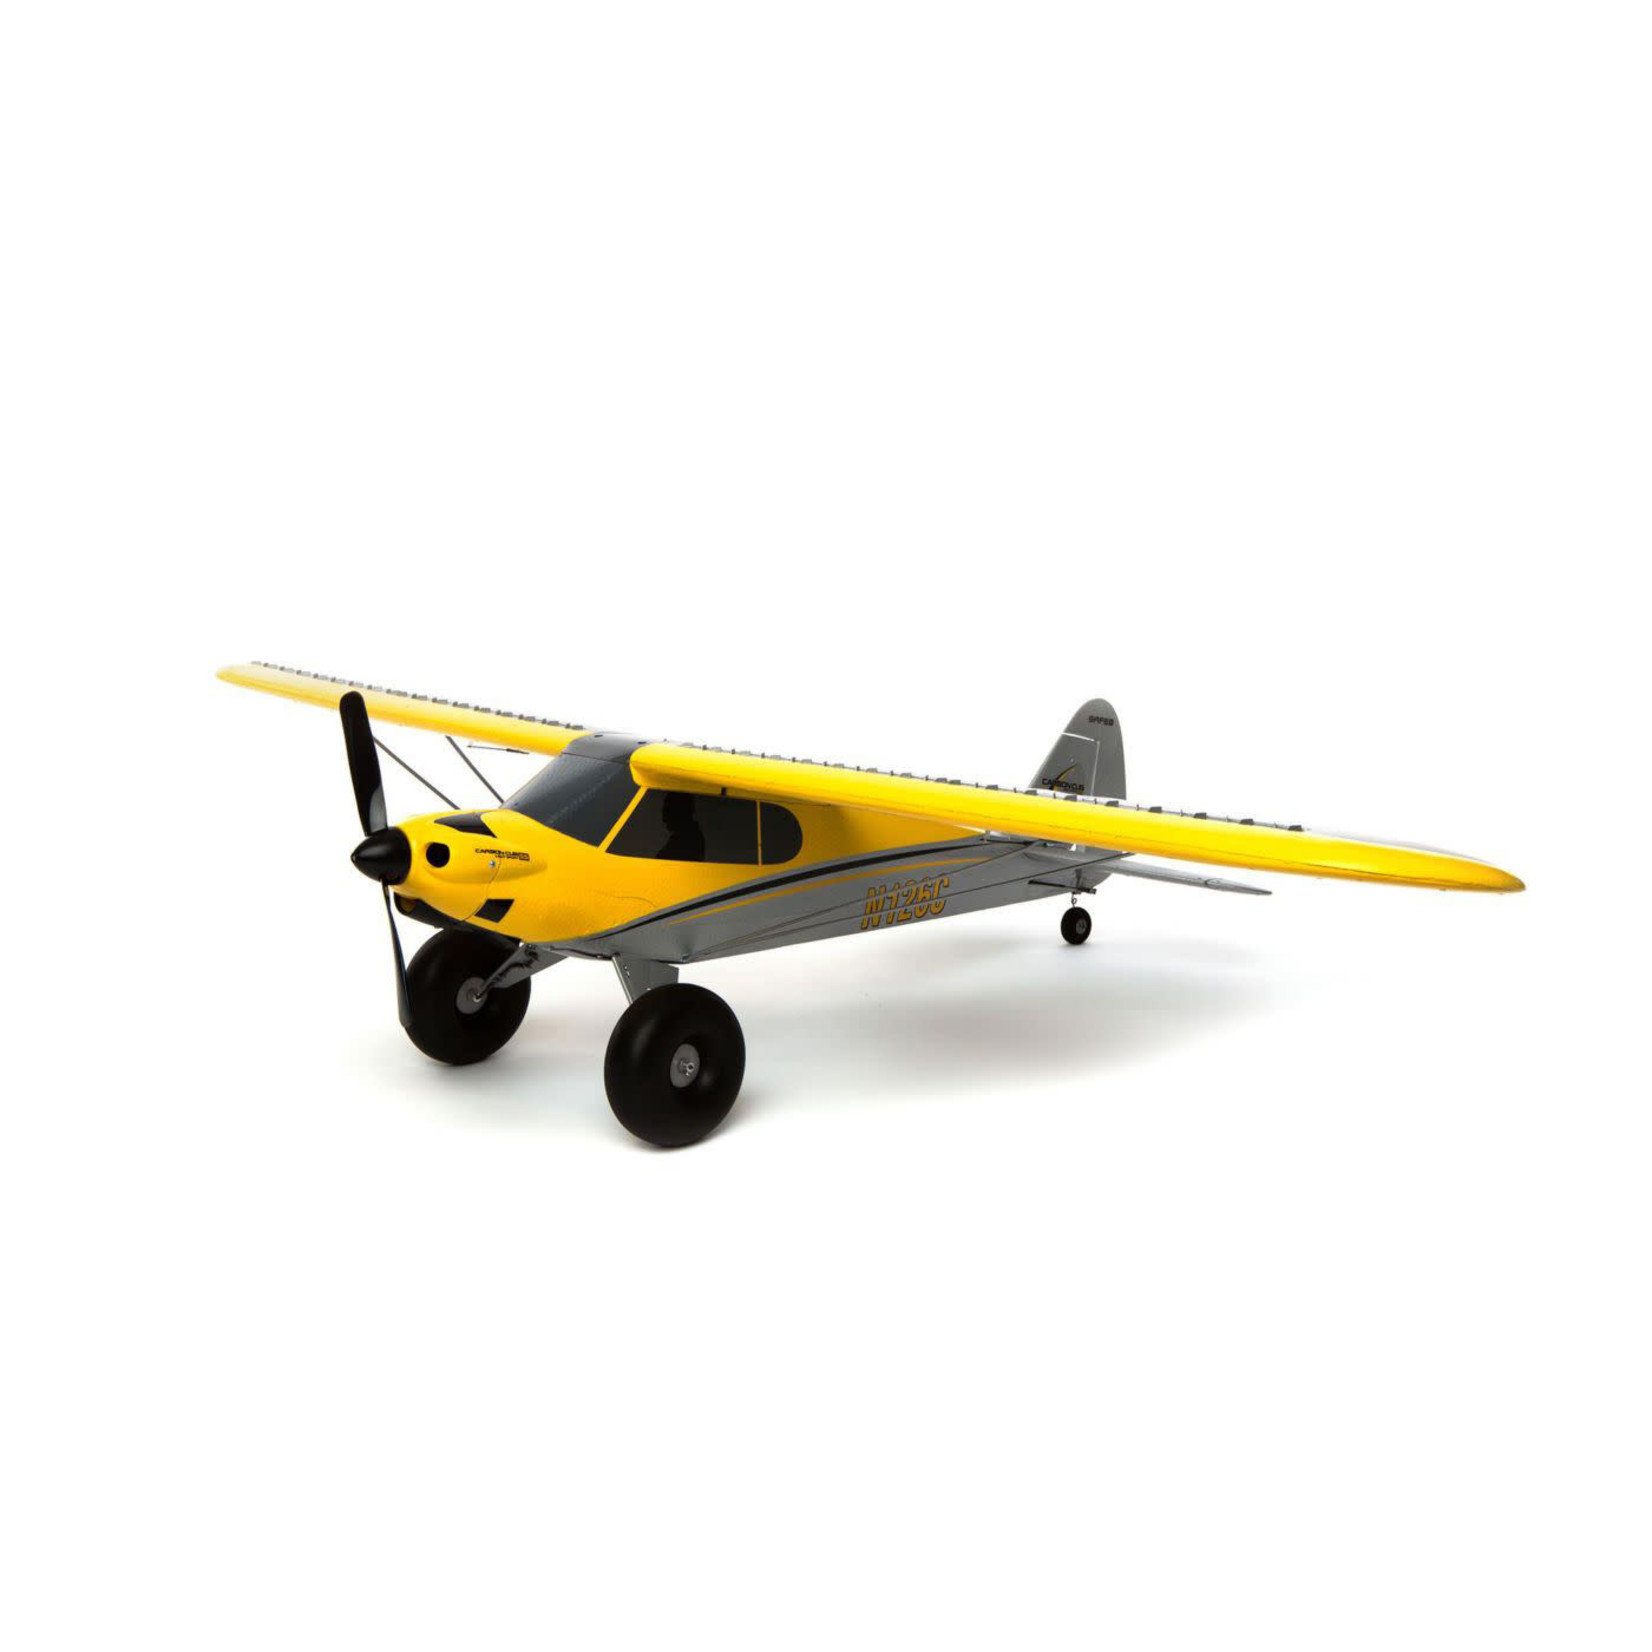 HobbyZone HobbyZone Carbon Cub S 2 1.3m RTF Basic Electric Airplane (1300mm) w/SAFE Technology #HBZ320001